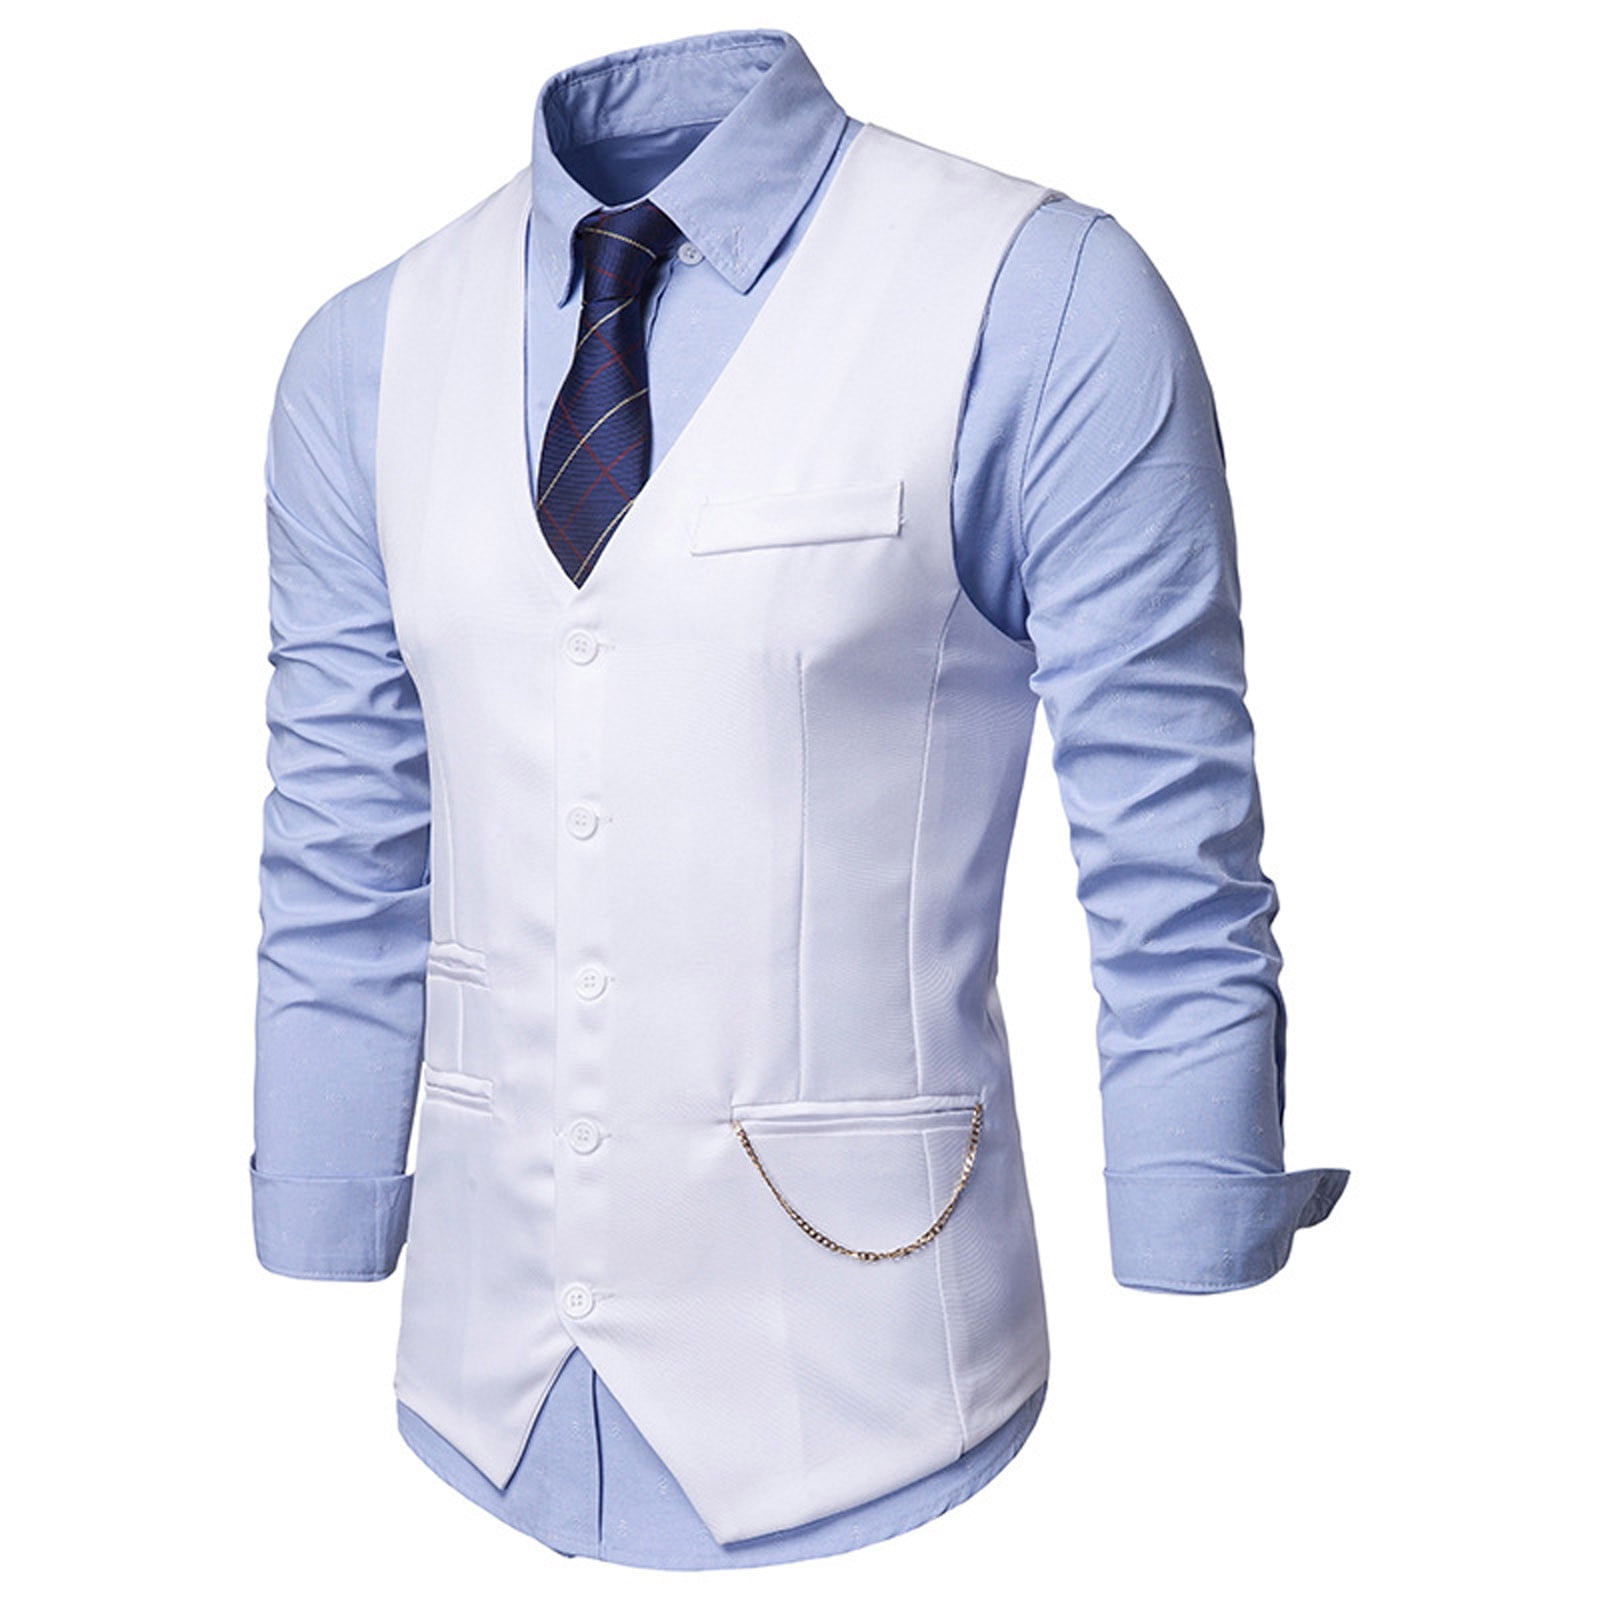 APEXFWDT Men's Casual Dress Suit Vest Slim Fit Business Formal ...